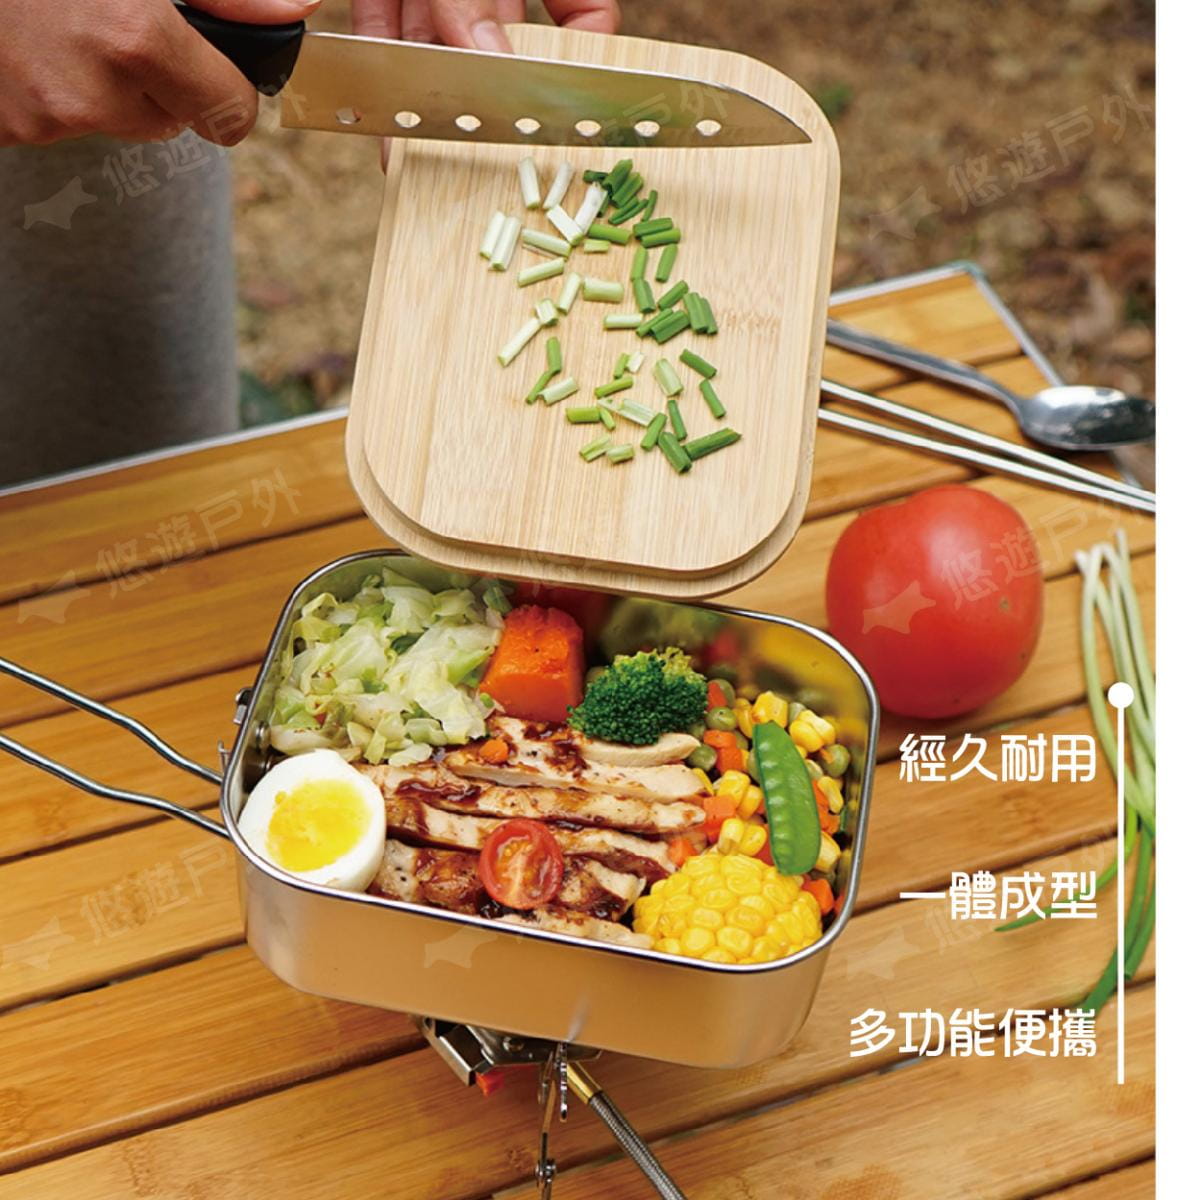 【CLS 】竹木板蓋不鏽鋼野餐盒 悠遊戶外 2